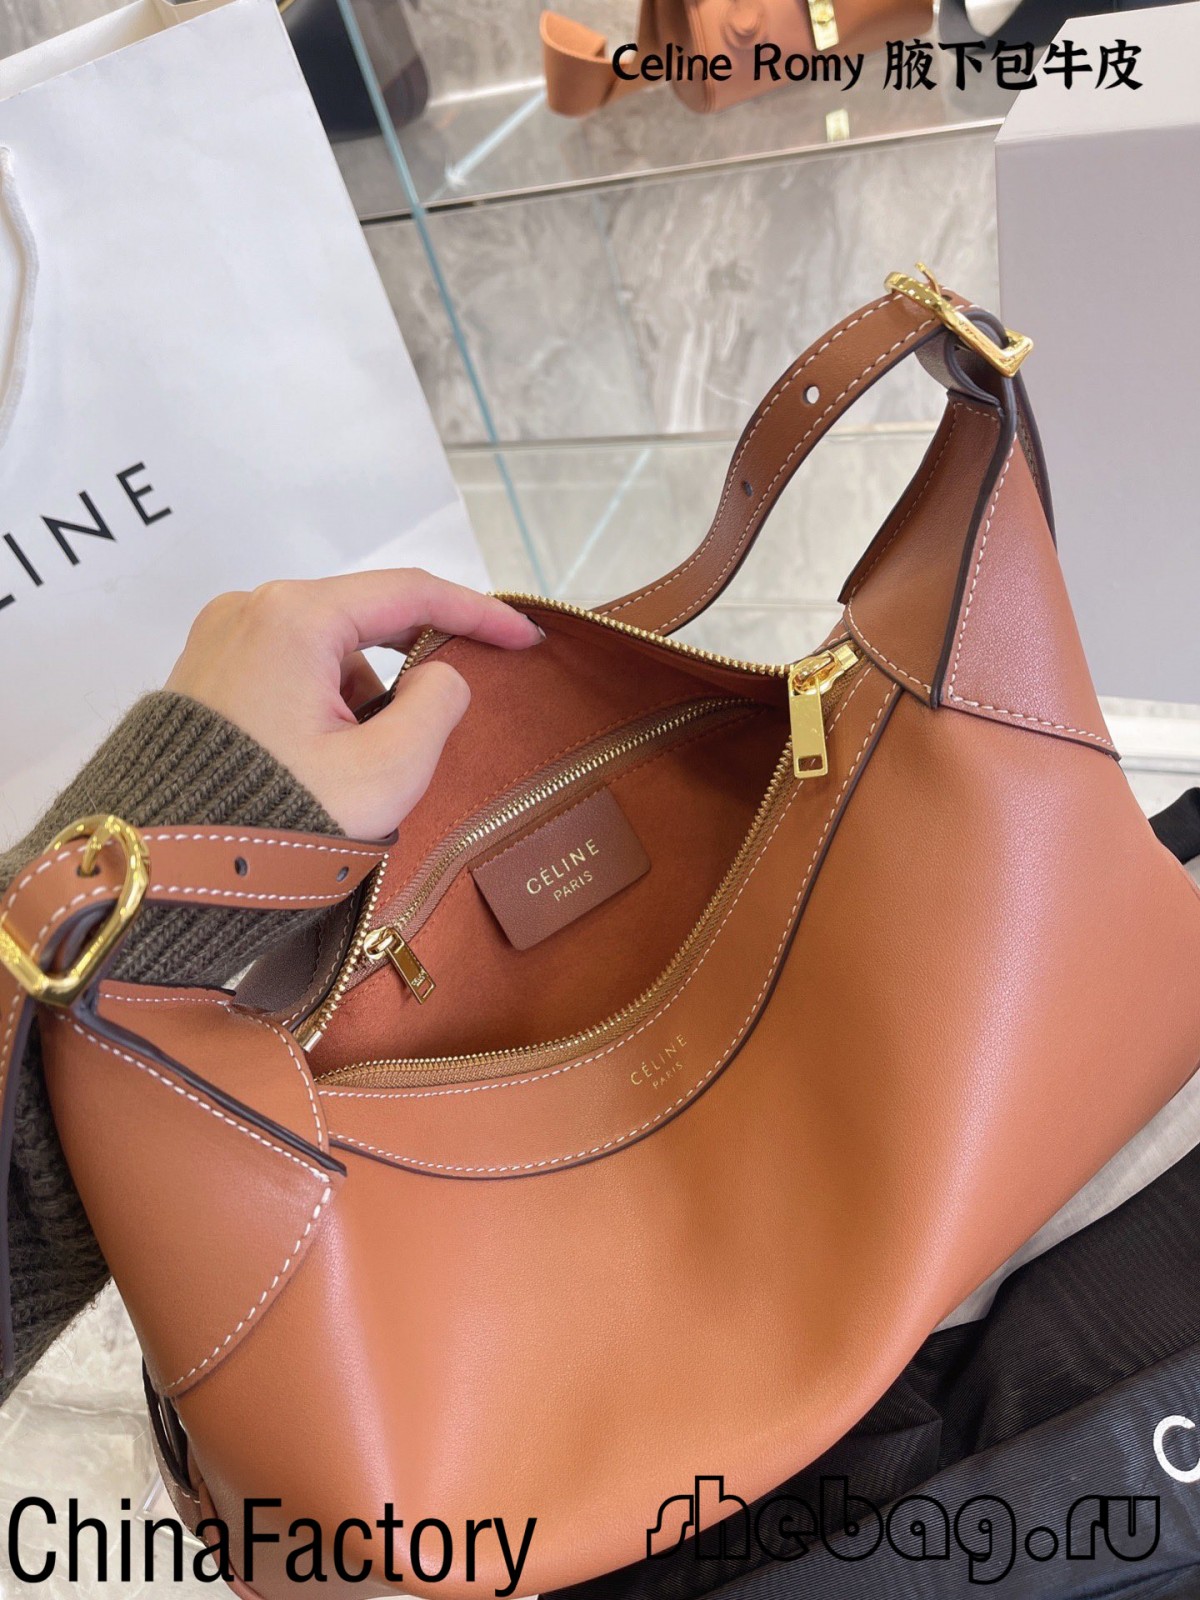 Migliori recensioni di borse Celine replica: Celine Romy (edizione 2022)-Best Quality Fake Louis Vuitton Bag Online Store, Replica designer bag ru